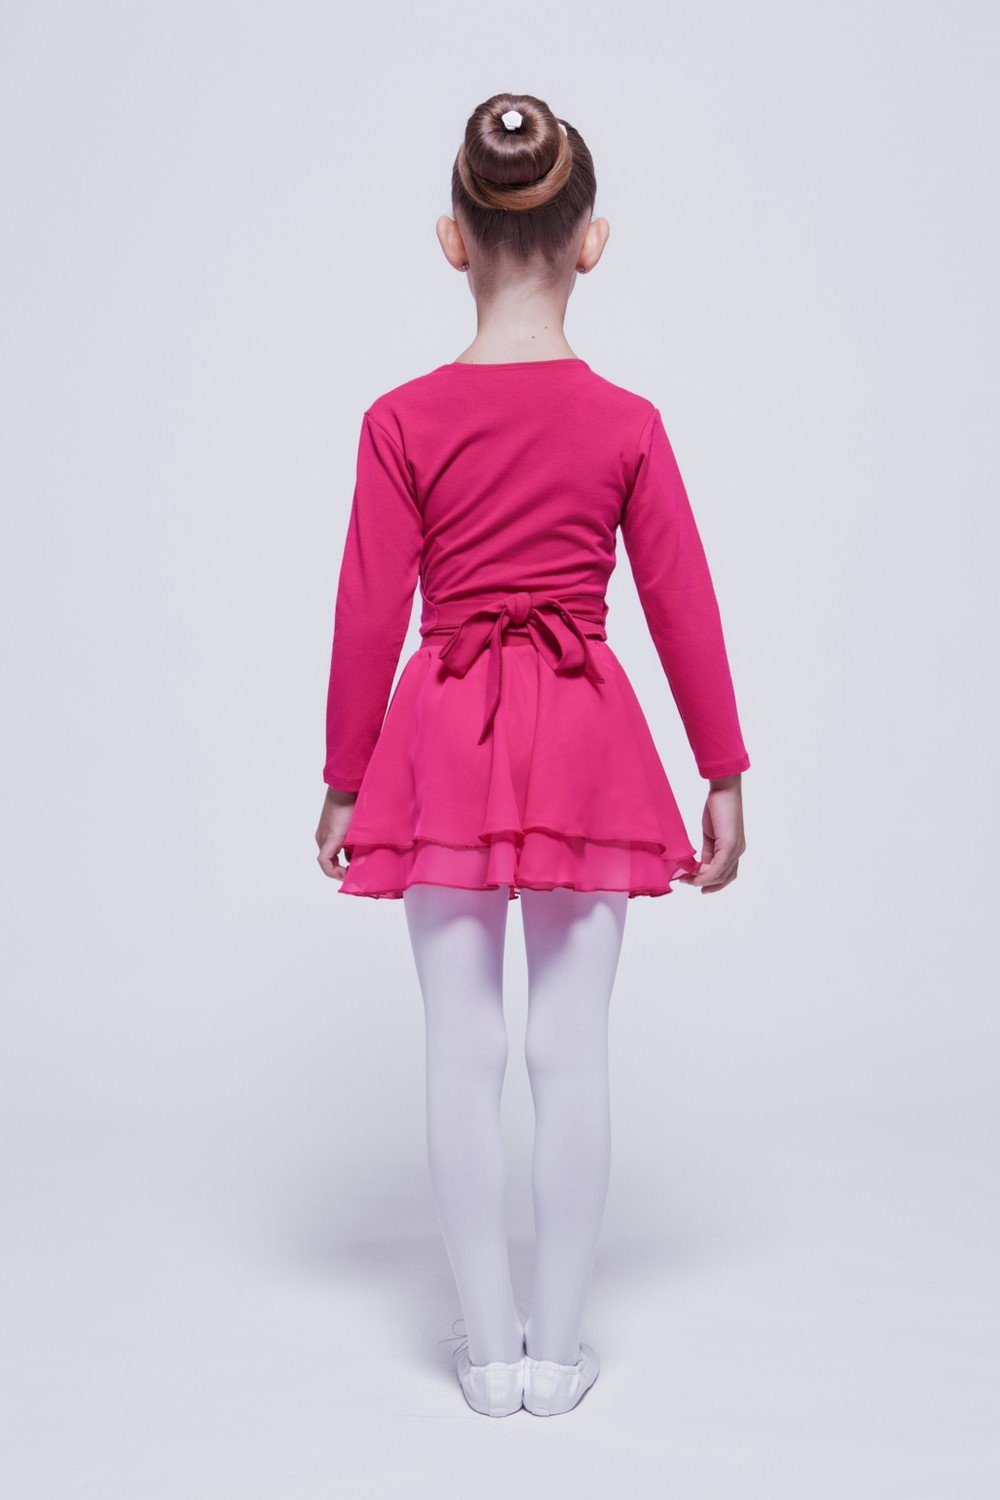 tanzmuster Sweatjacke Ballett aus pink Baumwolle Mandy Wickelacke Mädchen weicher Ballettjacke für